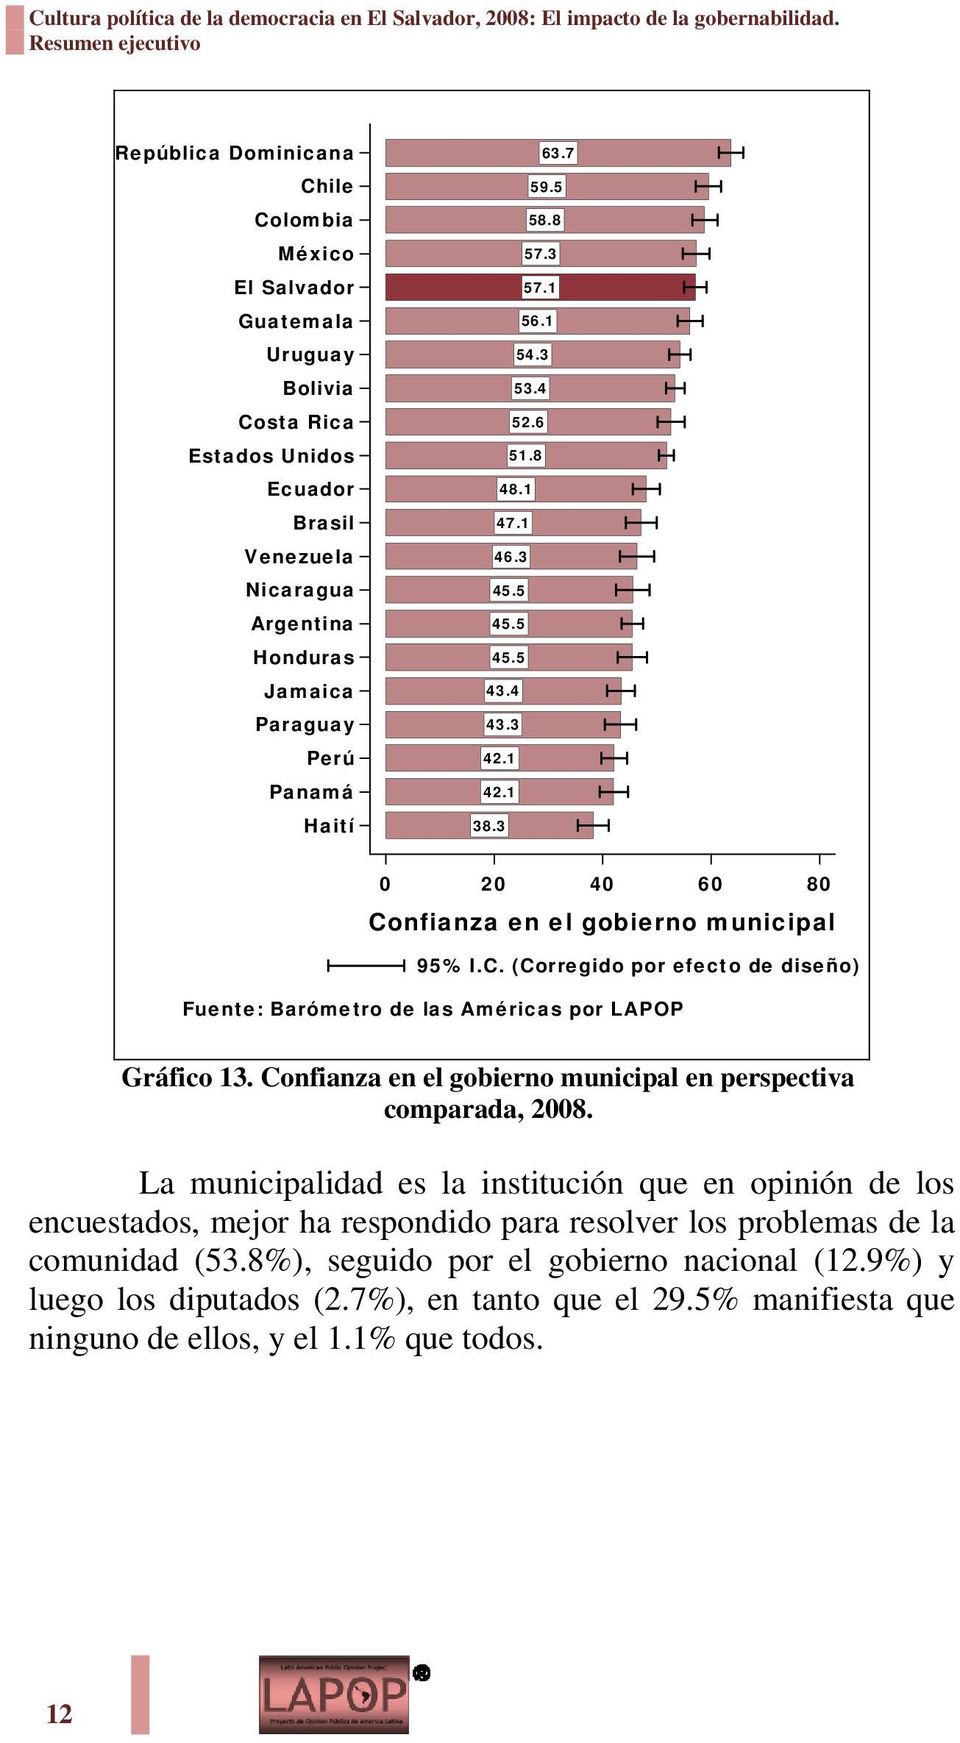 3 0 20 40 60 80 Confianza en el gobierno municipal Gráfico 13. Confianza en el gobierno municipal en perspectiva comparada, 2008.